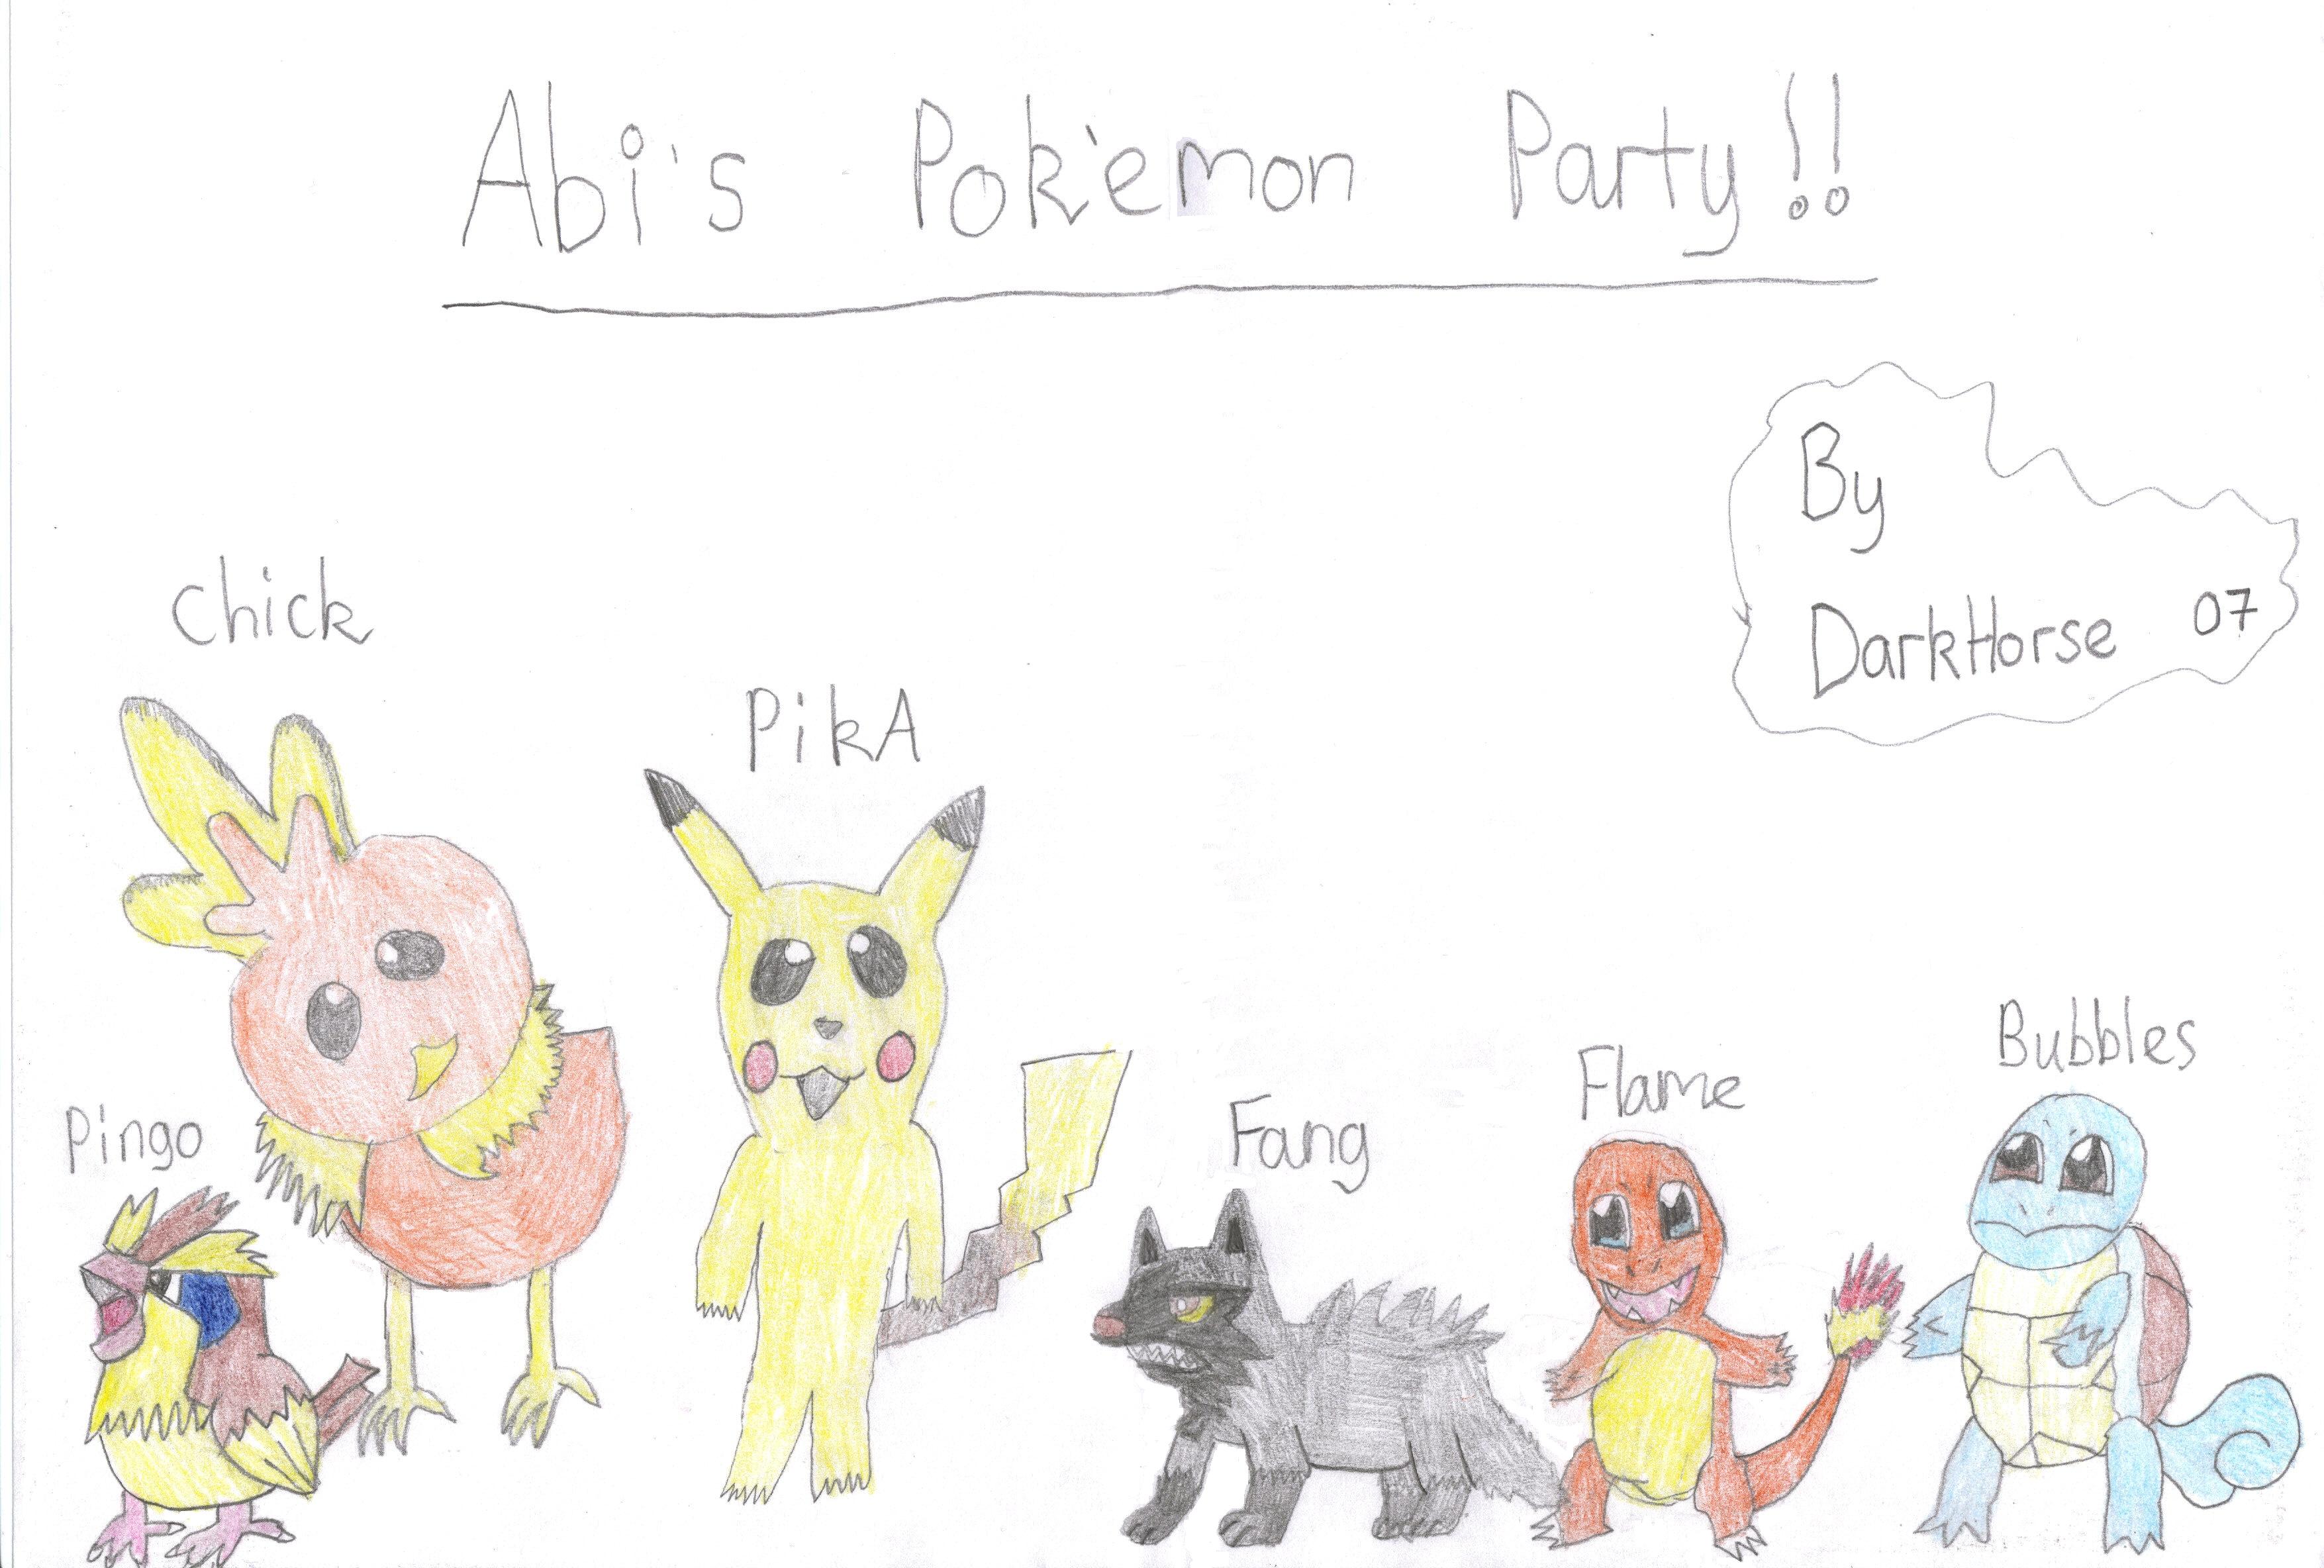 Abi's New Pokemon Party!! by darkhorse